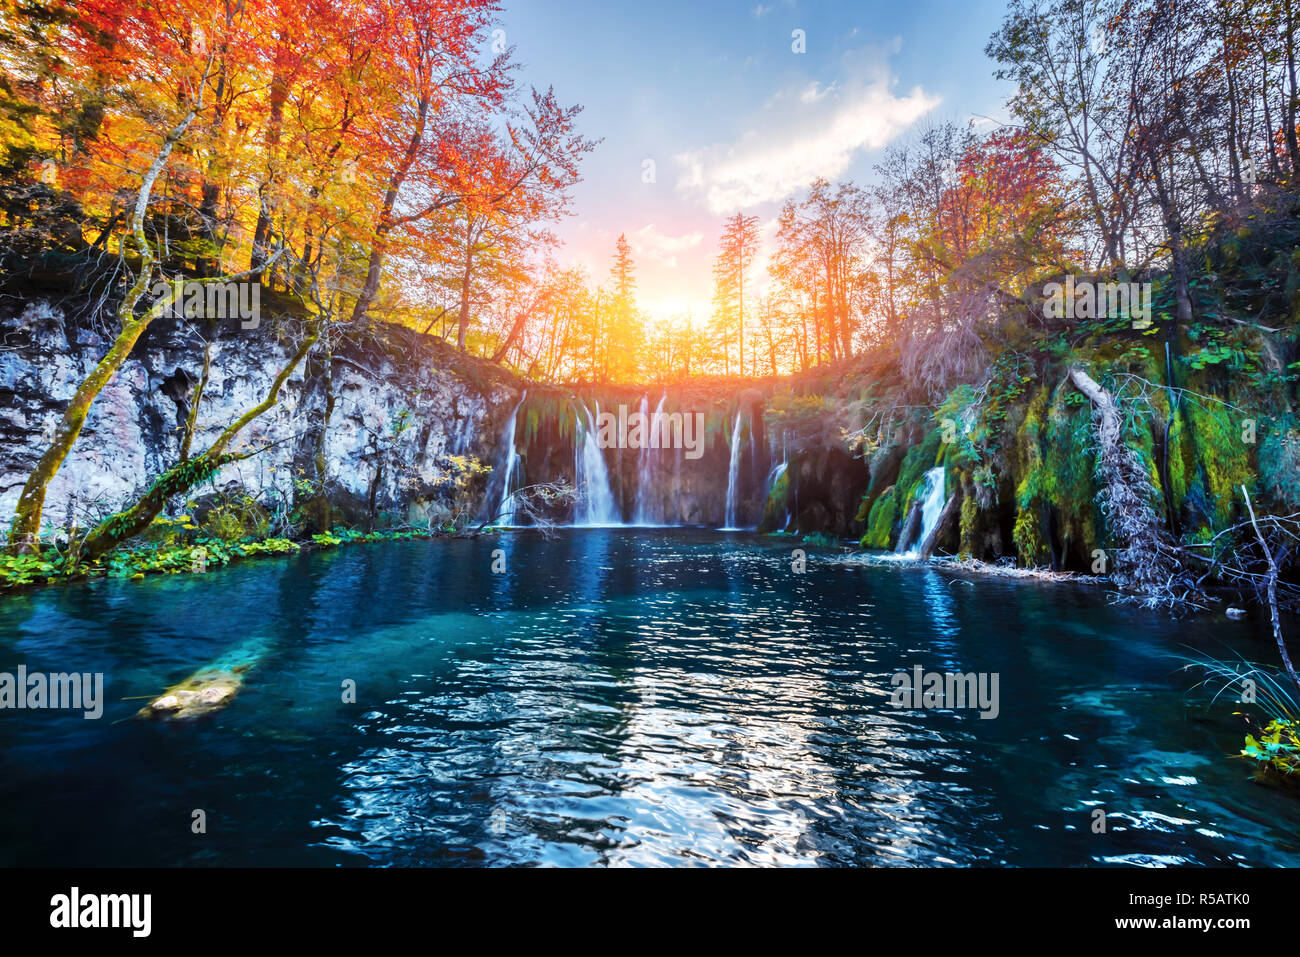 Amazing waterfall avec de l'eau d'un bleu pur dans des lacs de Plitvice. Forêt d'automne orange sur arrière-plan. Parc National de Plitvice, Croatie. Photographie de paysage Banque D'Images